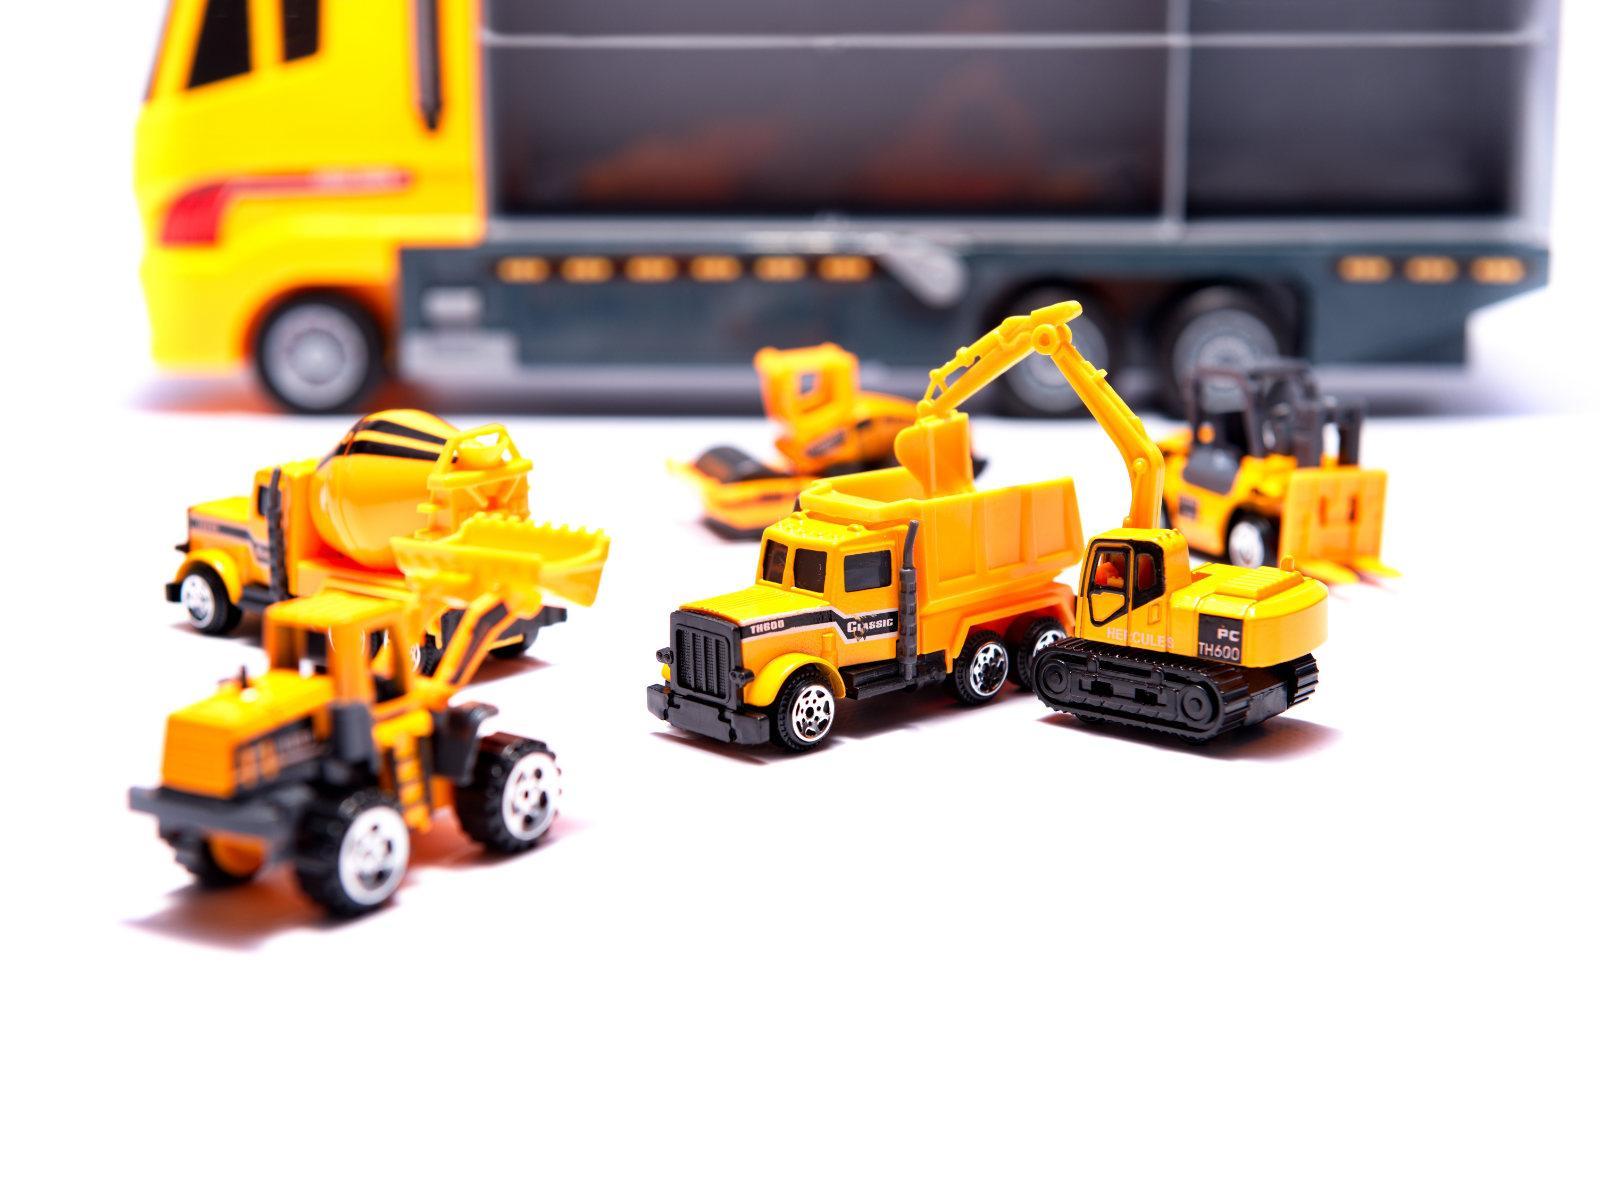 Transporter ciężarówka TIR wyrzutnia + metalowe auta maszyny budowlane zabawka dla dzieci 15x10x36cm nr. 11